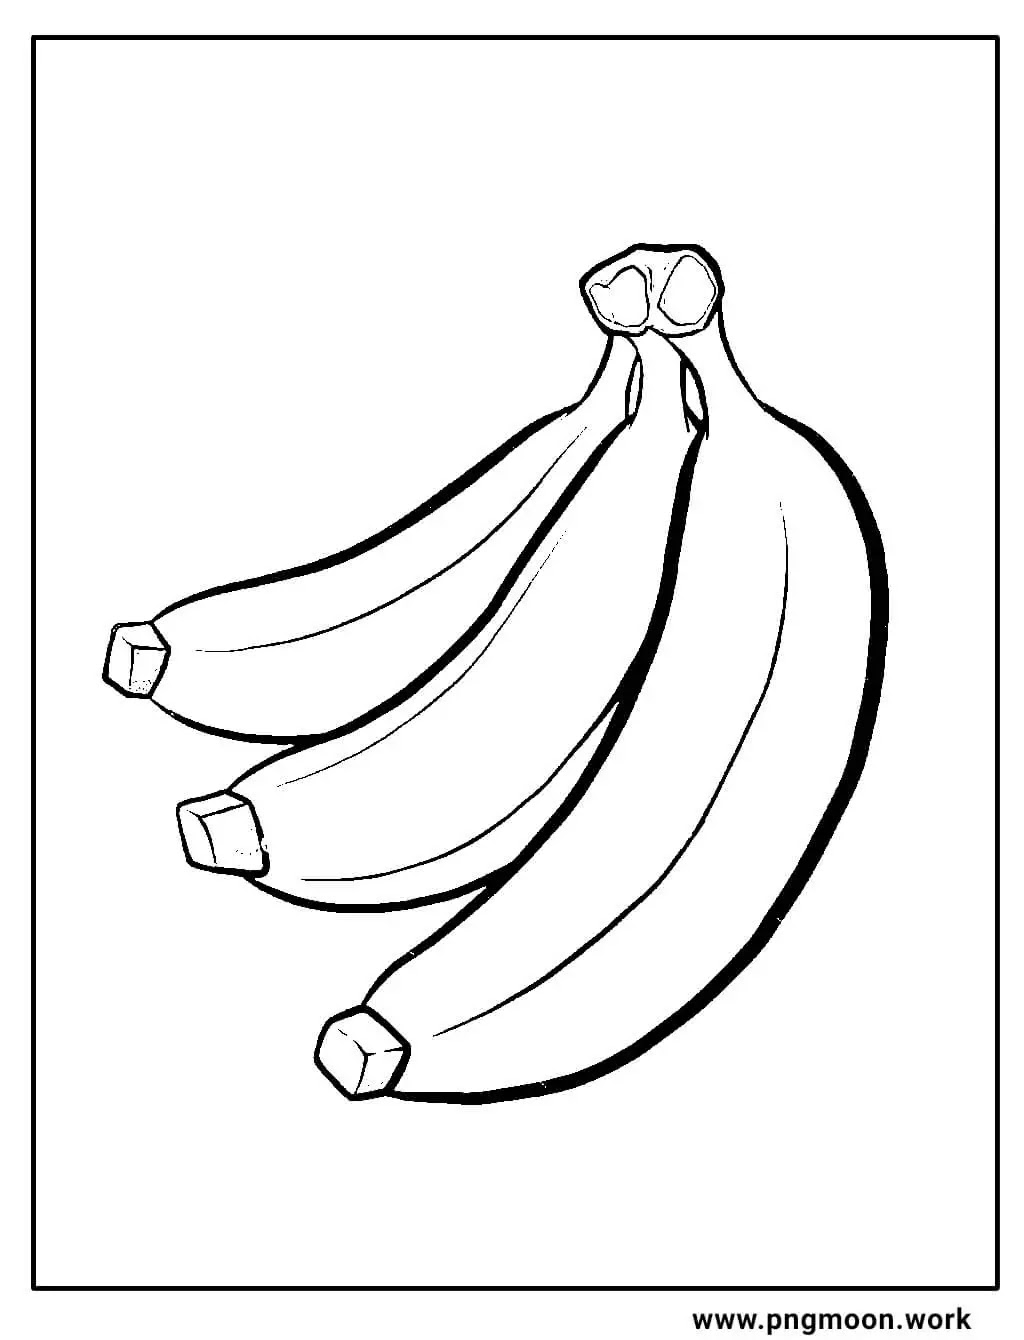 banana coloring page